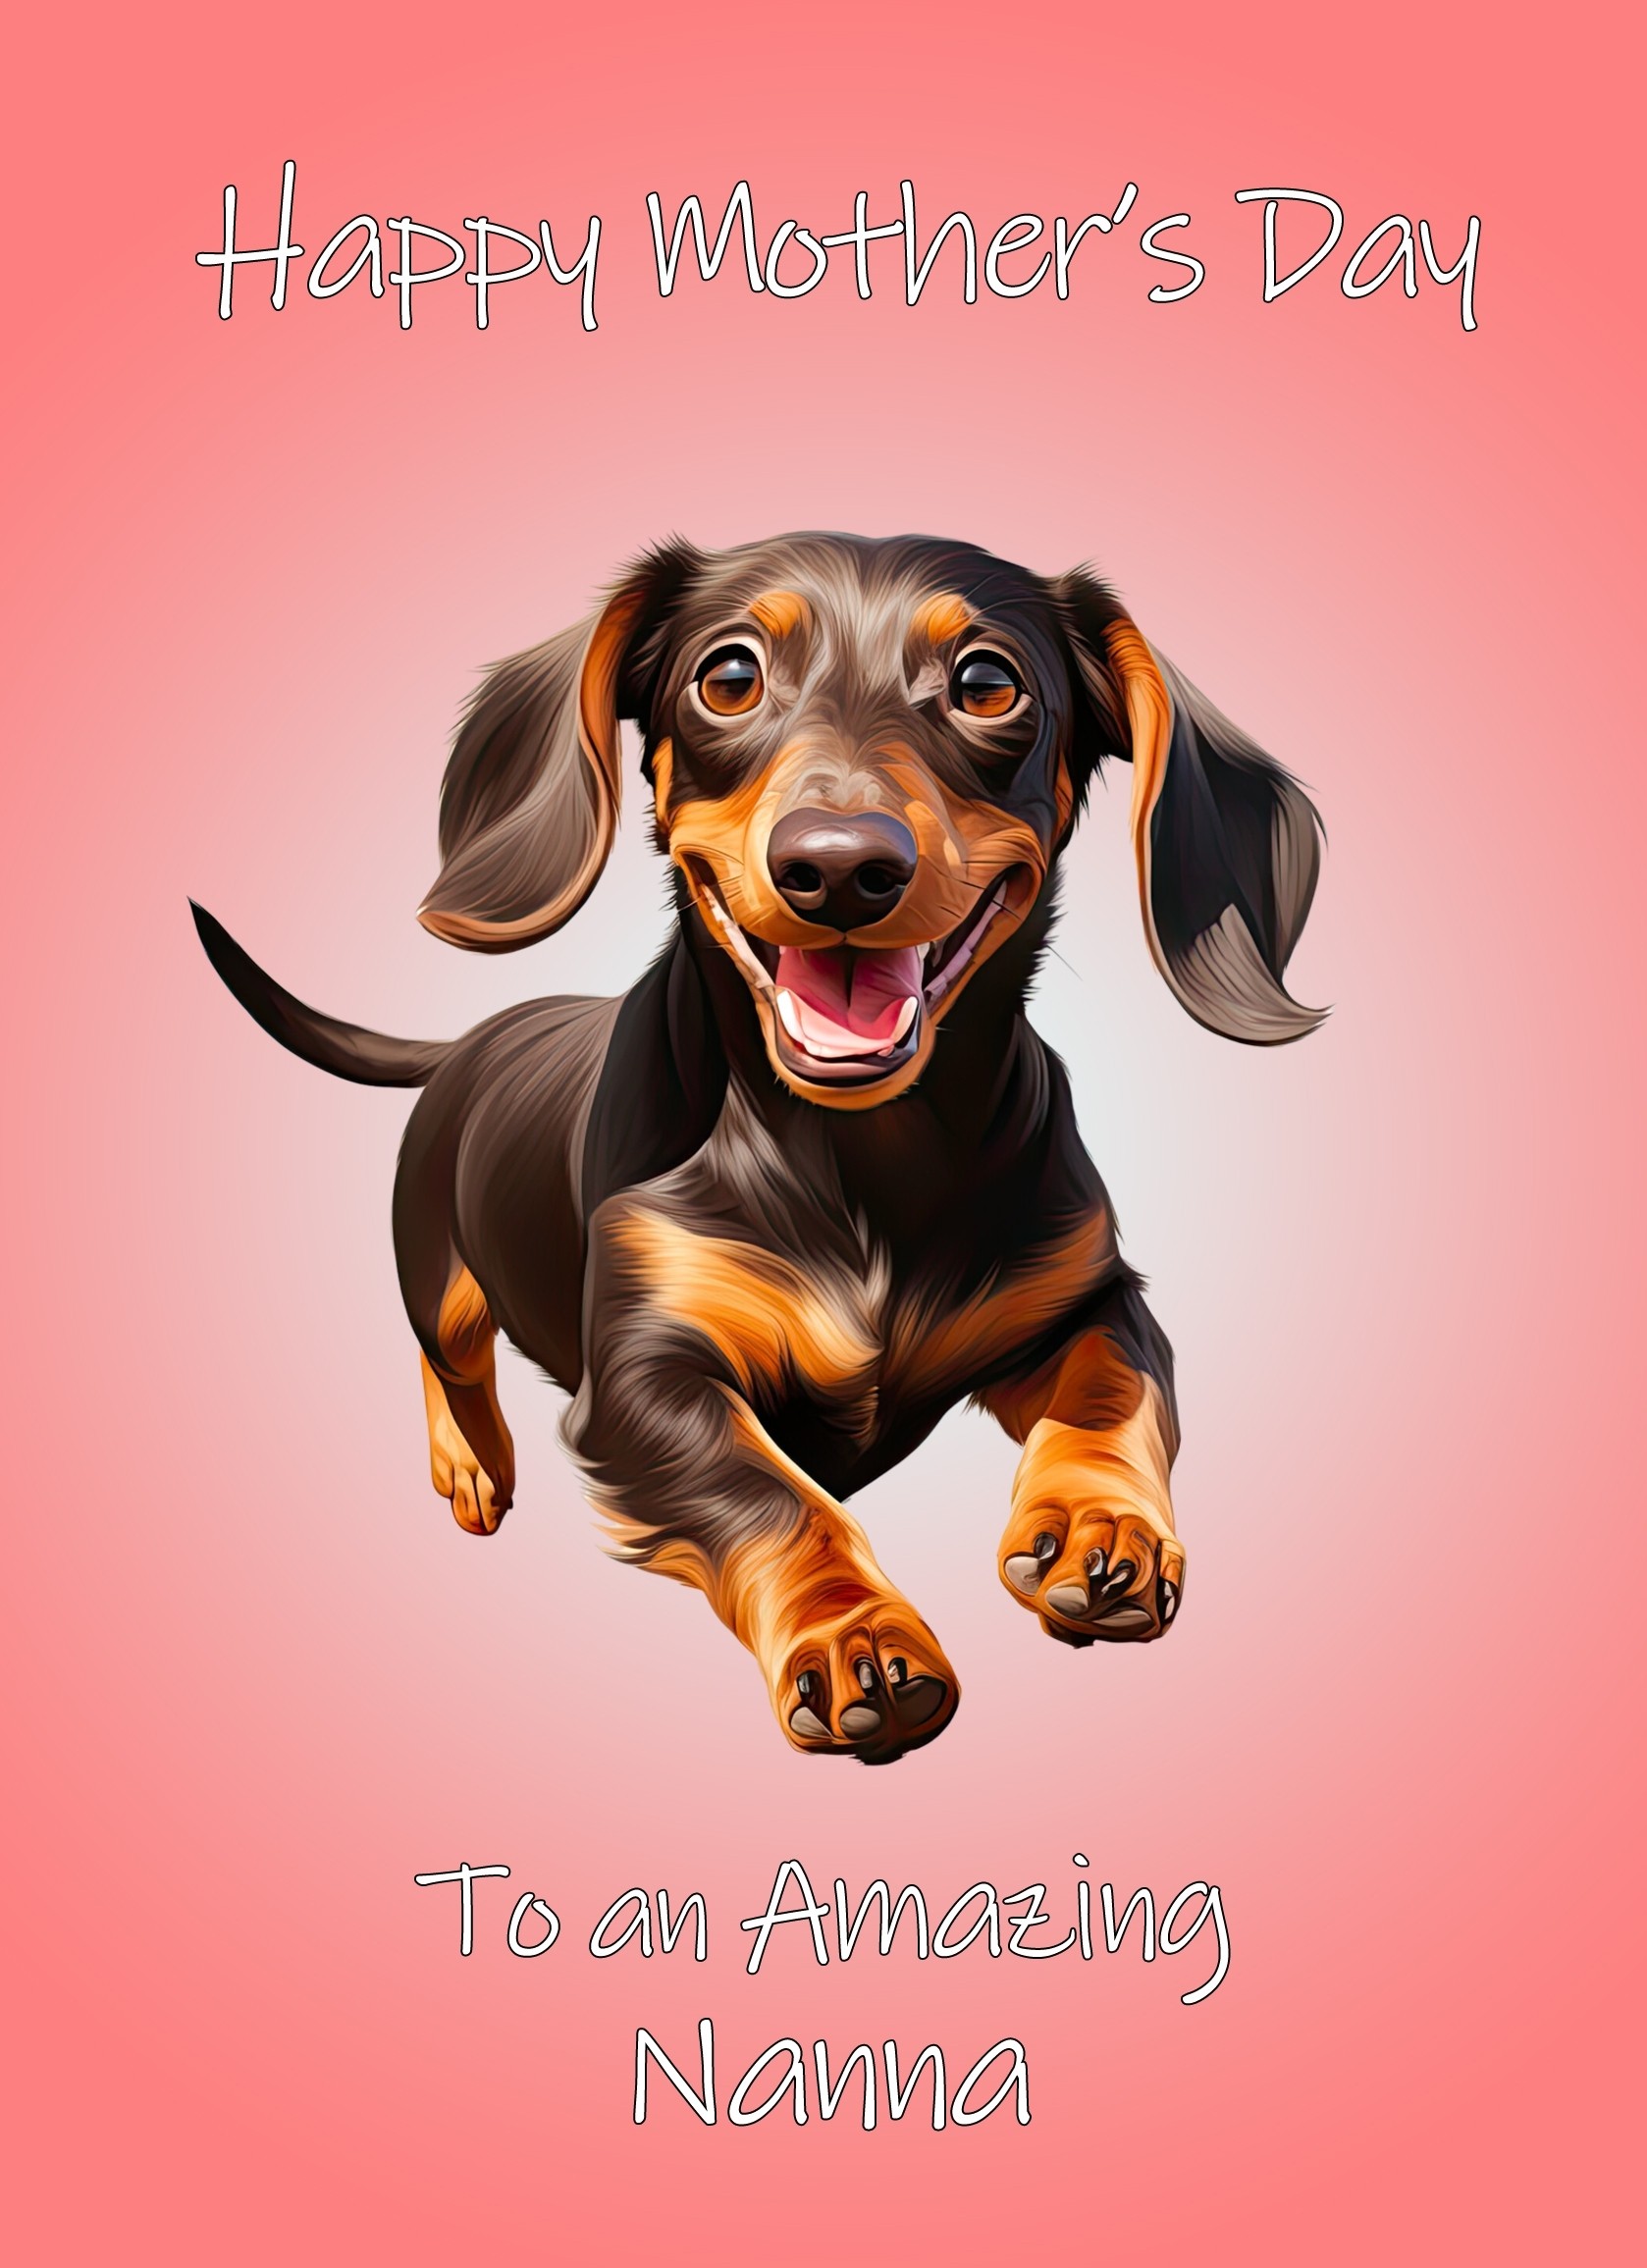 Dachshund Dog Mothers Day Card For Nanna